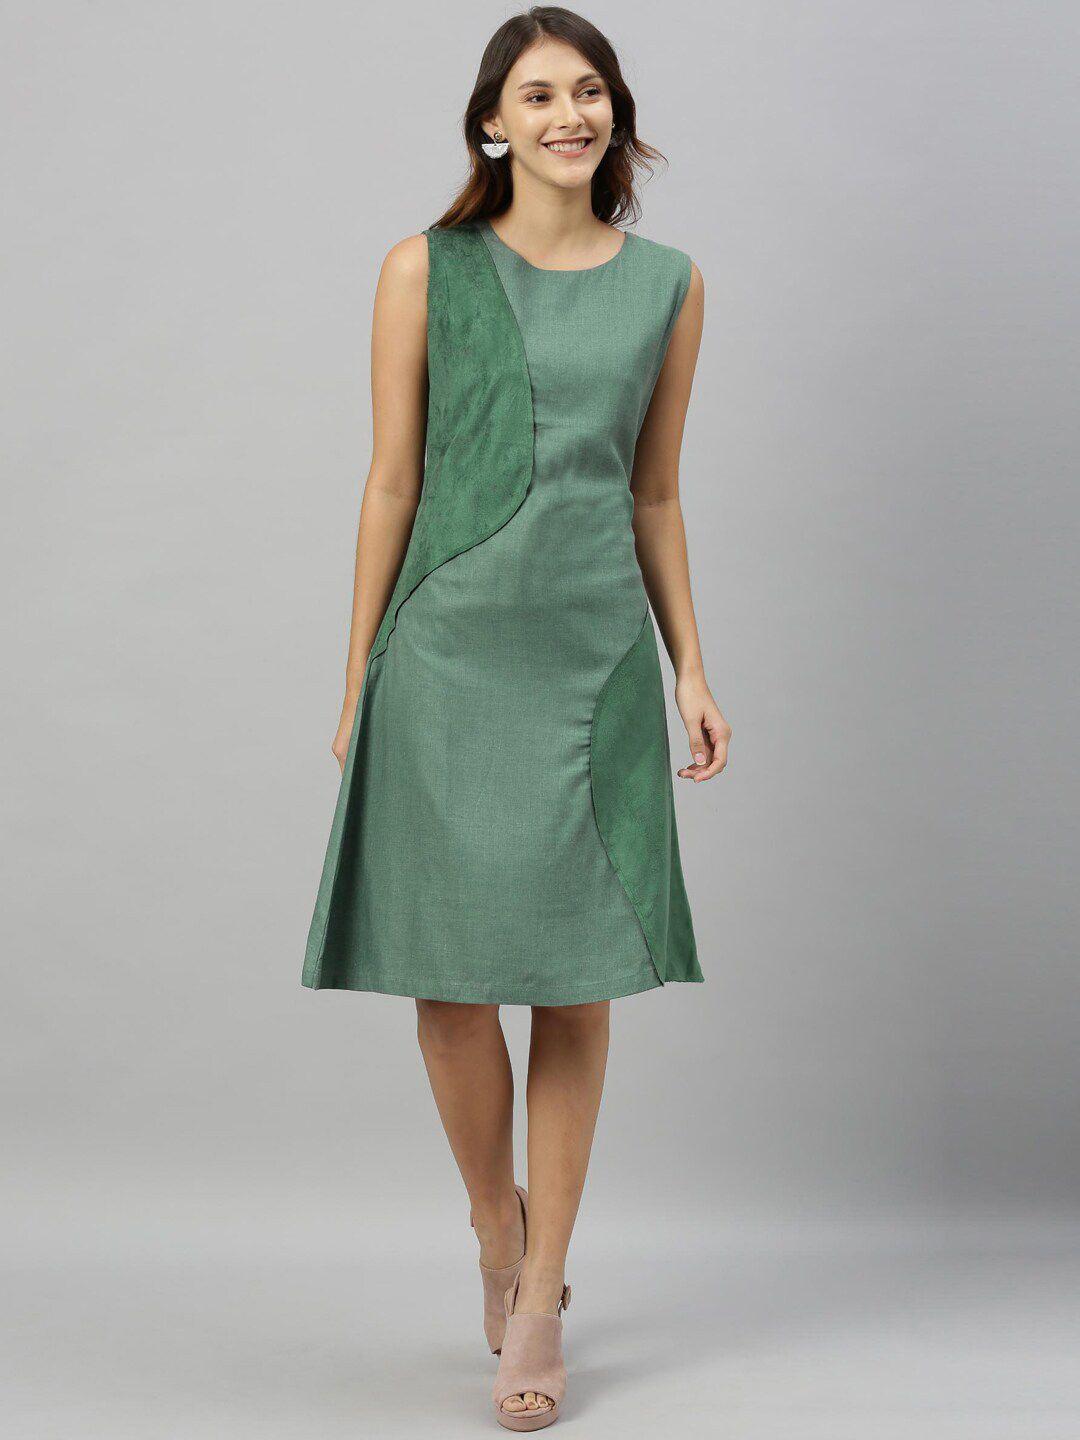 rareism women green solid a-line dress